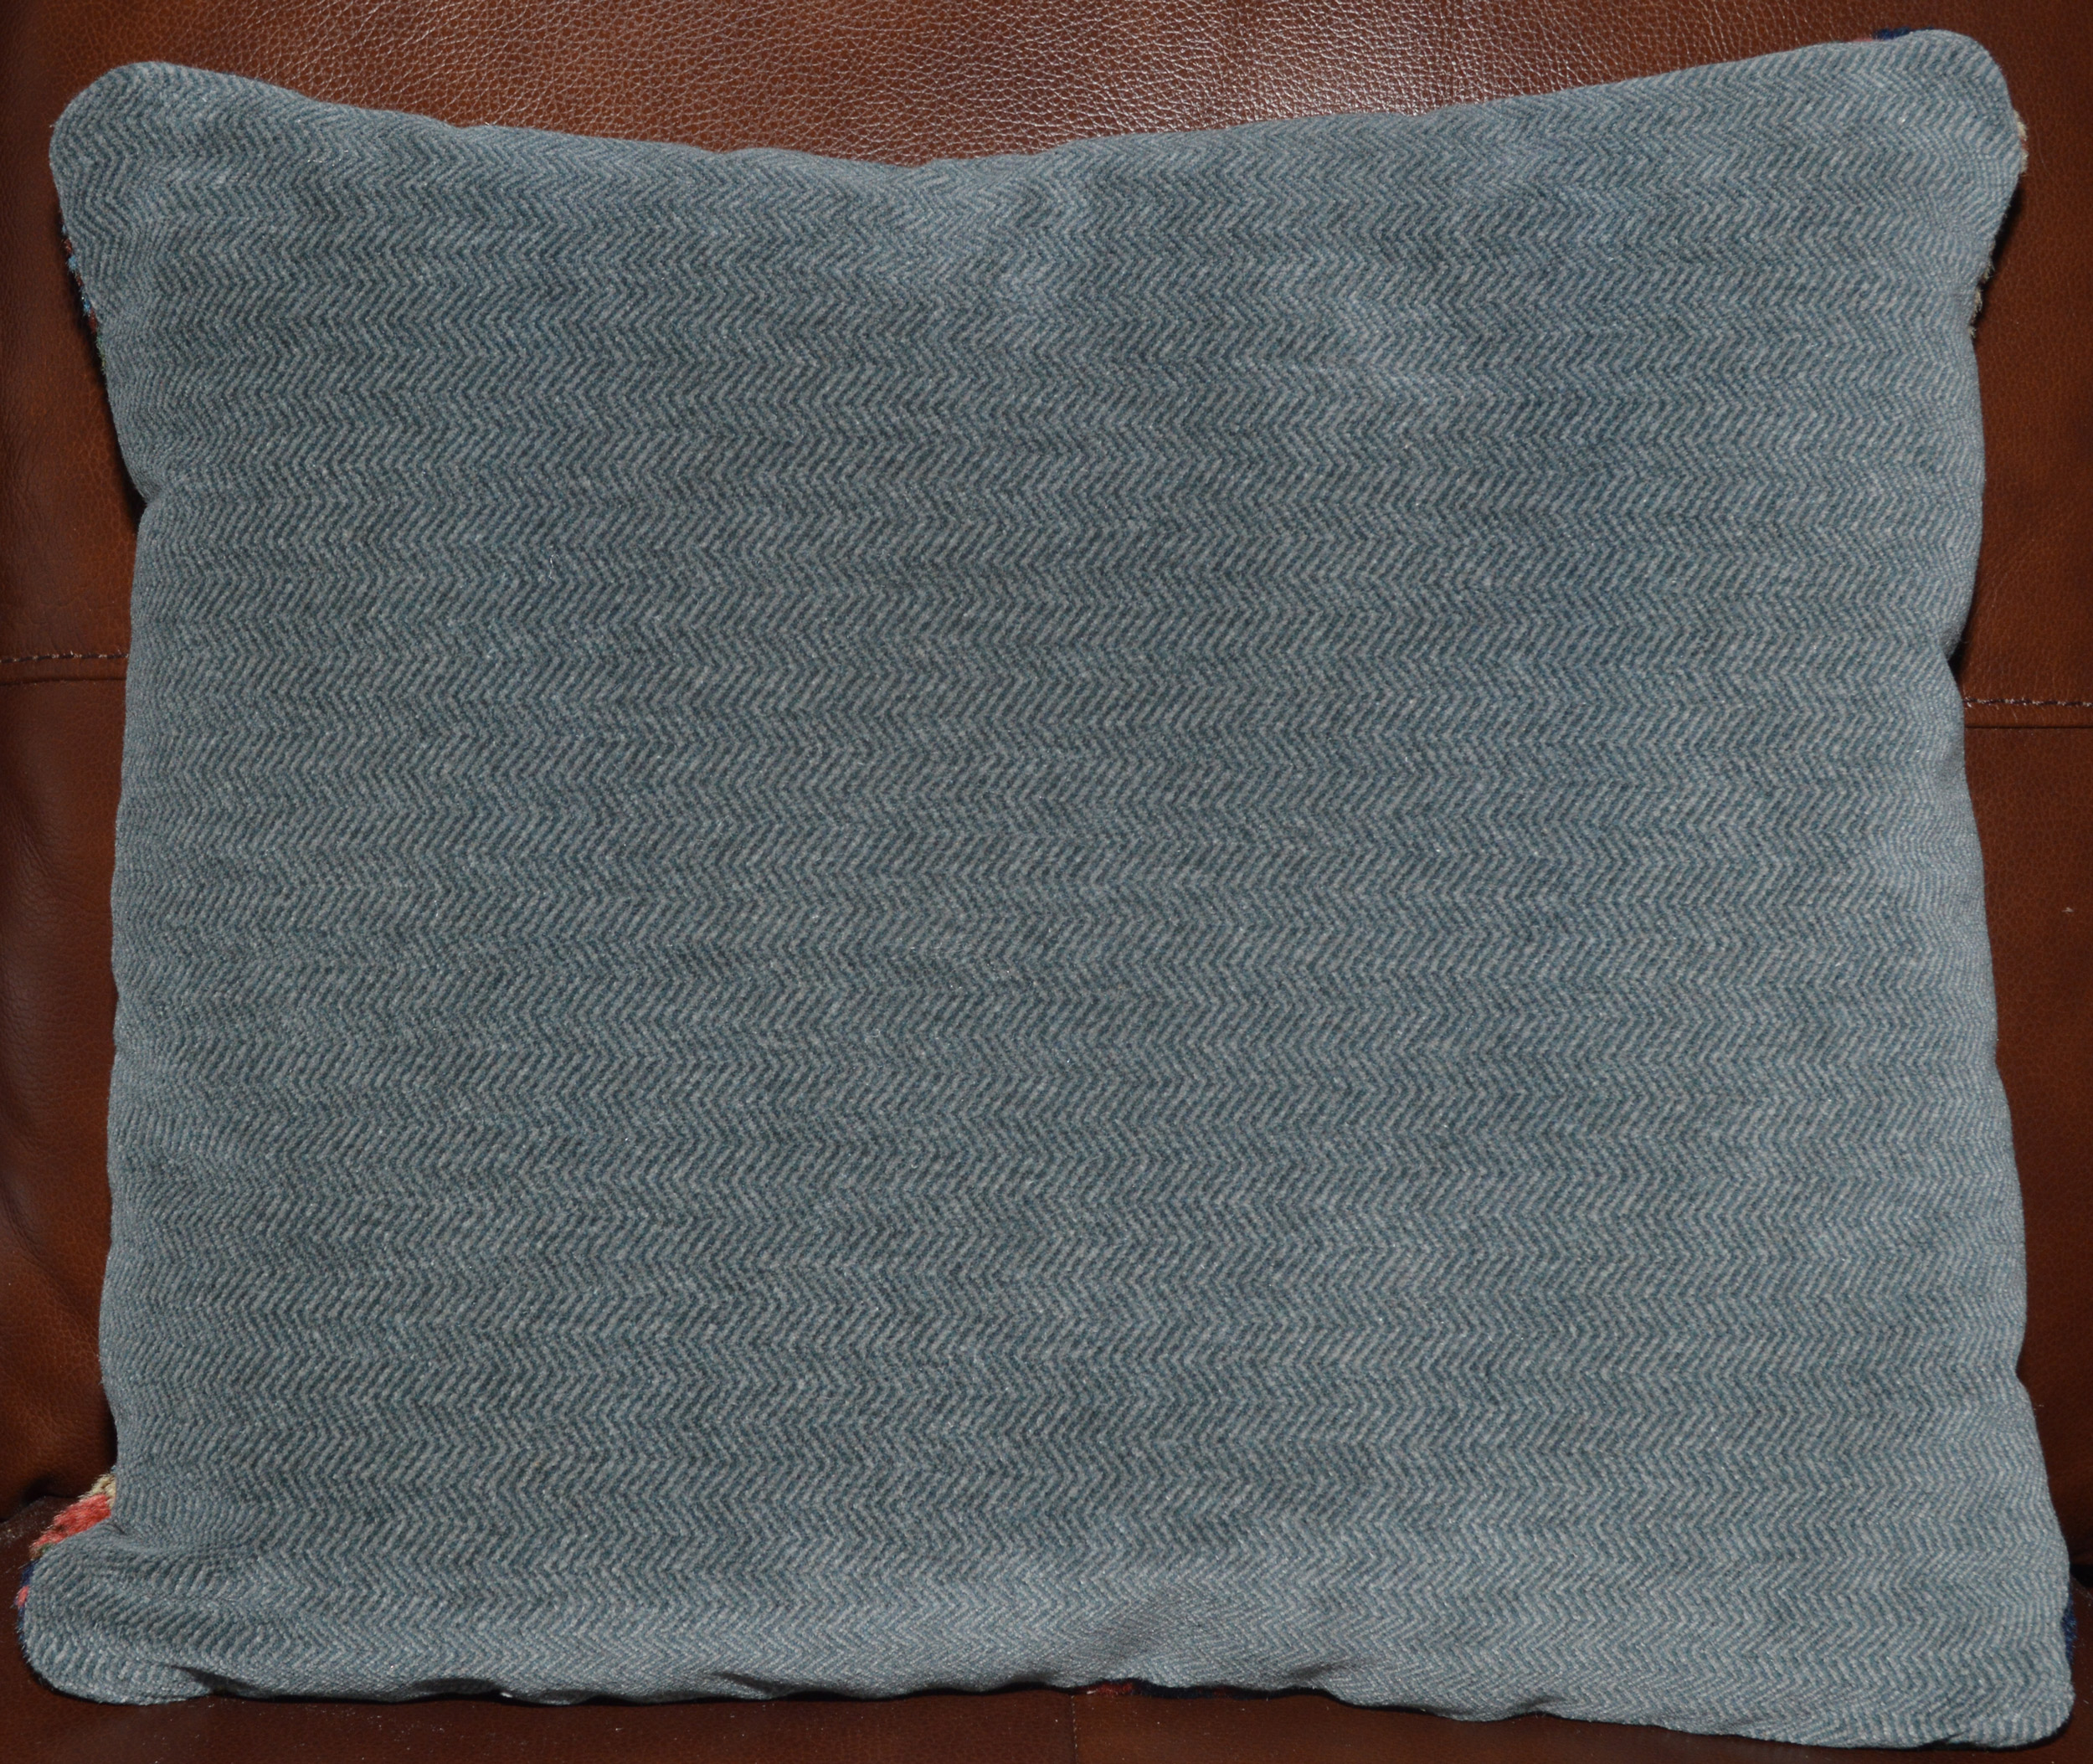 Bluish-grey herringbone velvet backing from an antique Kurdish bag face fragment pillow